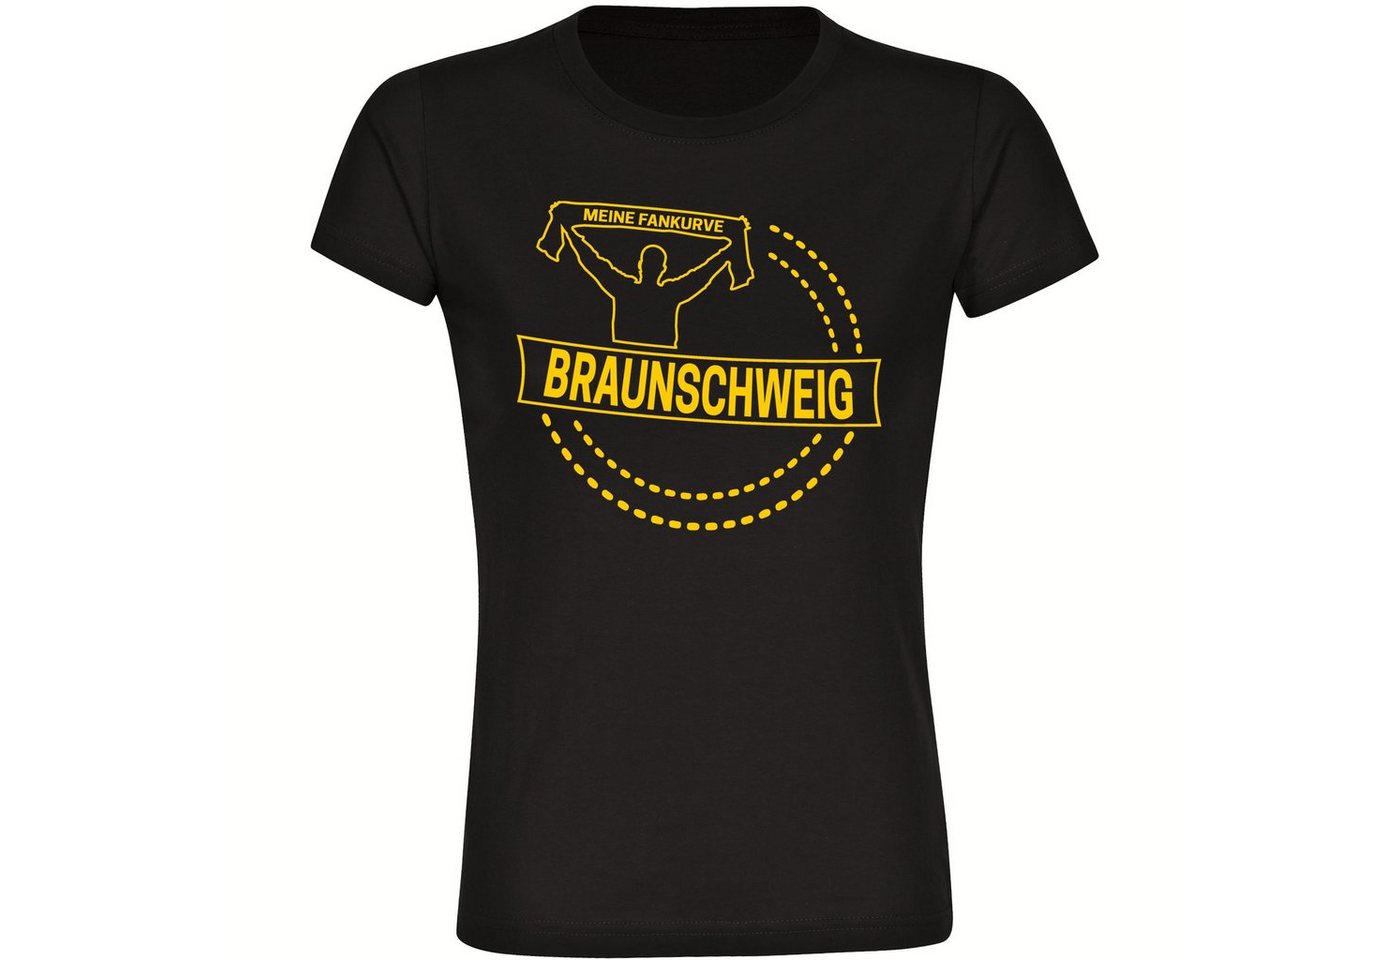 multifanshop T-Shirt Damen Braunschweig - Meine Fankurve - Frauen von multifanshop